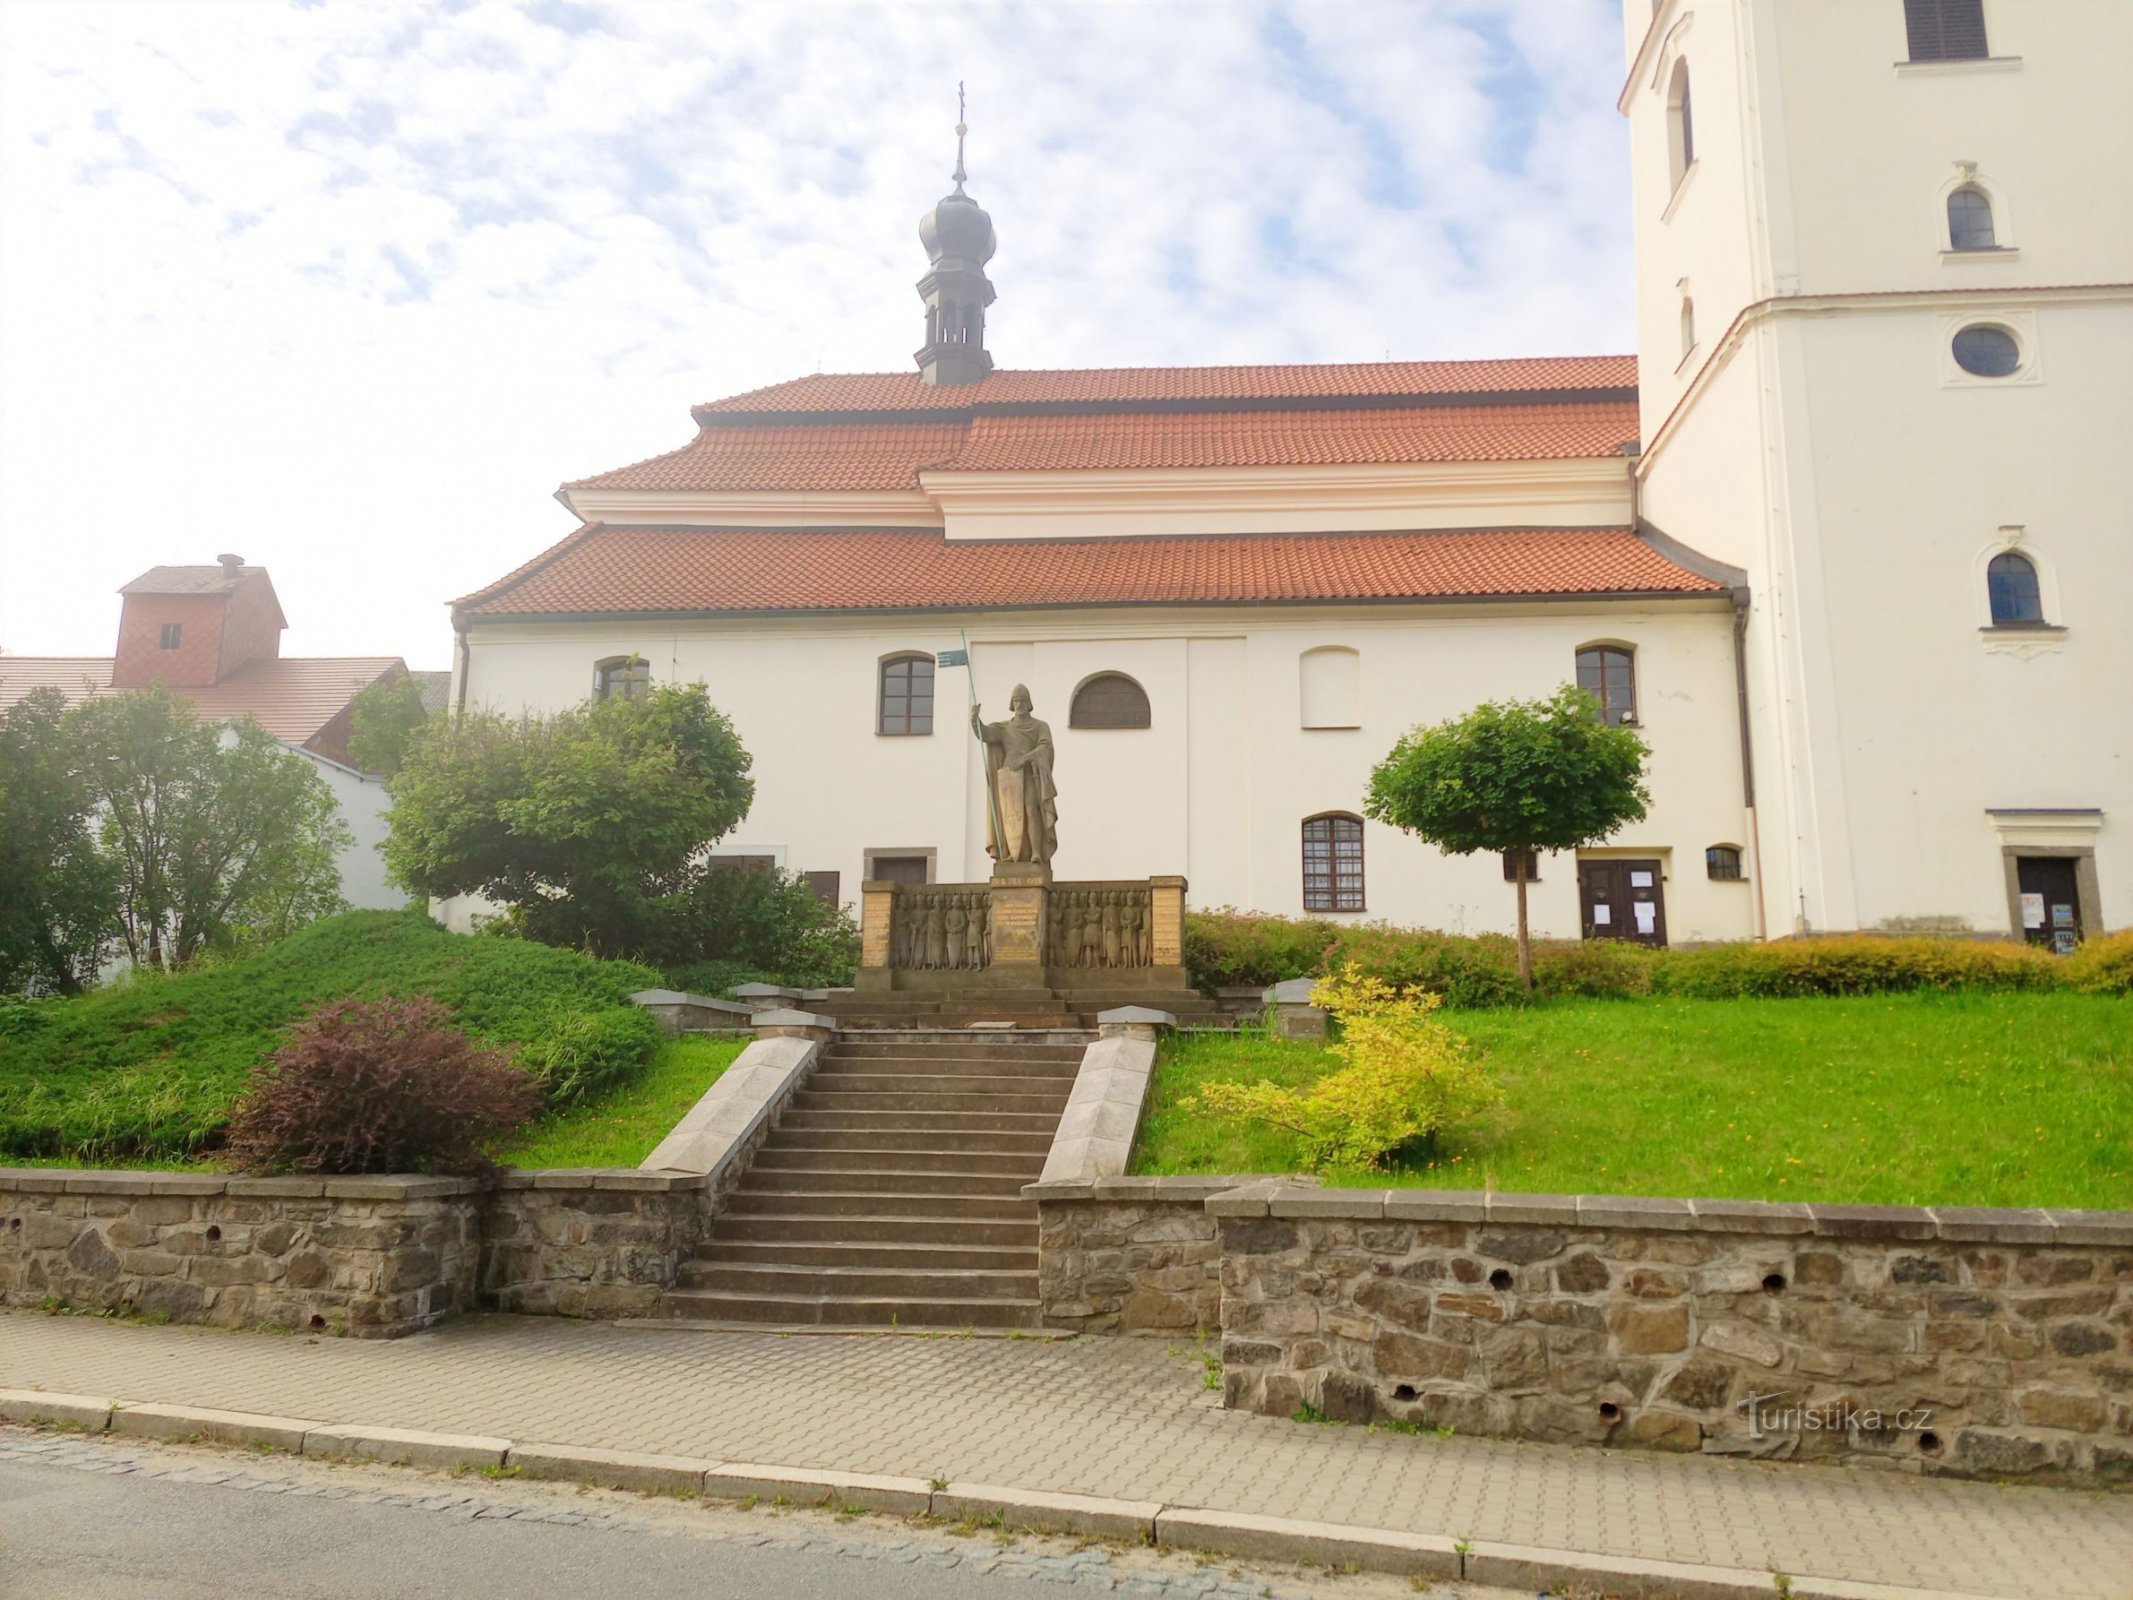 1. Estátua de S. Venceslau em frente à igreja de mesmo nome em Votice